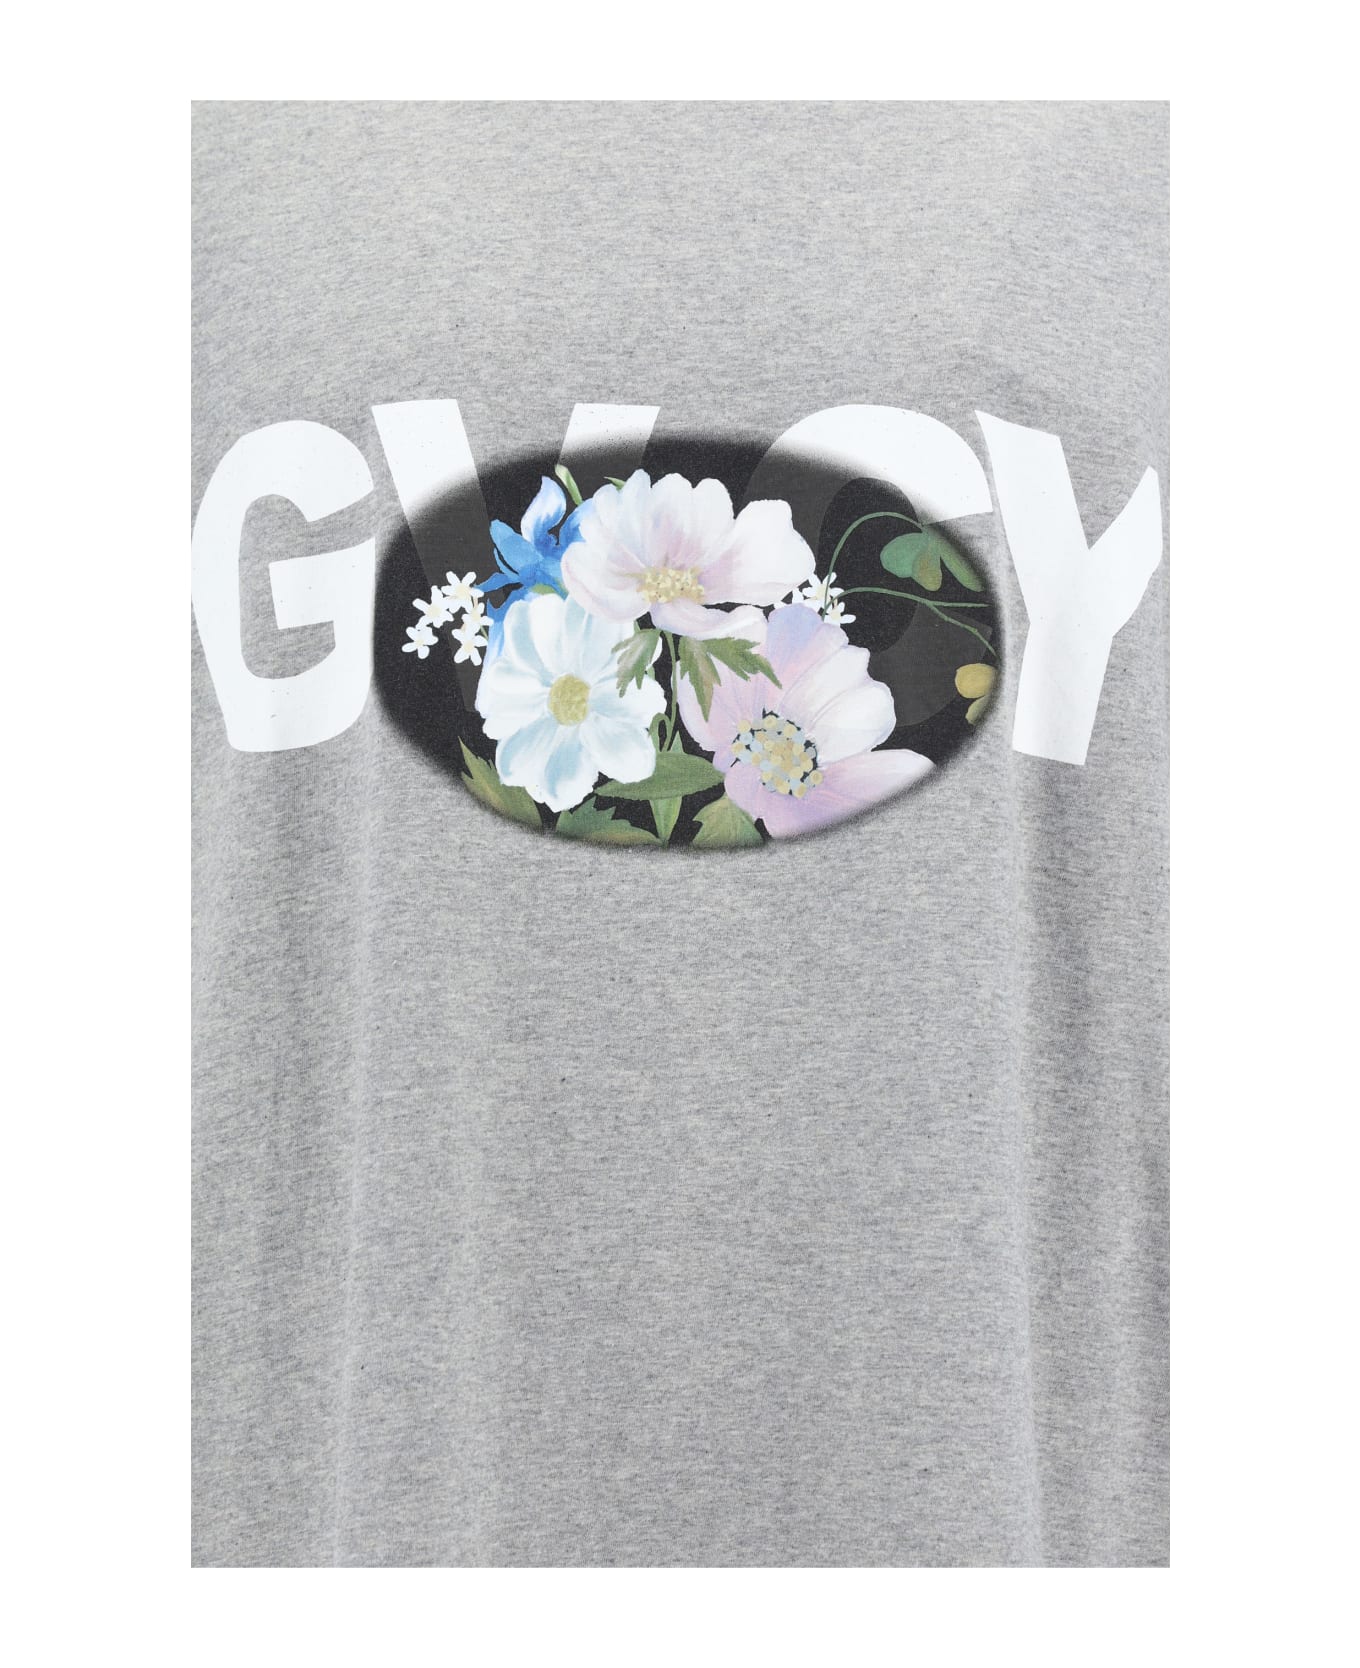 Givenchy T-shirt - Light Grey Melang